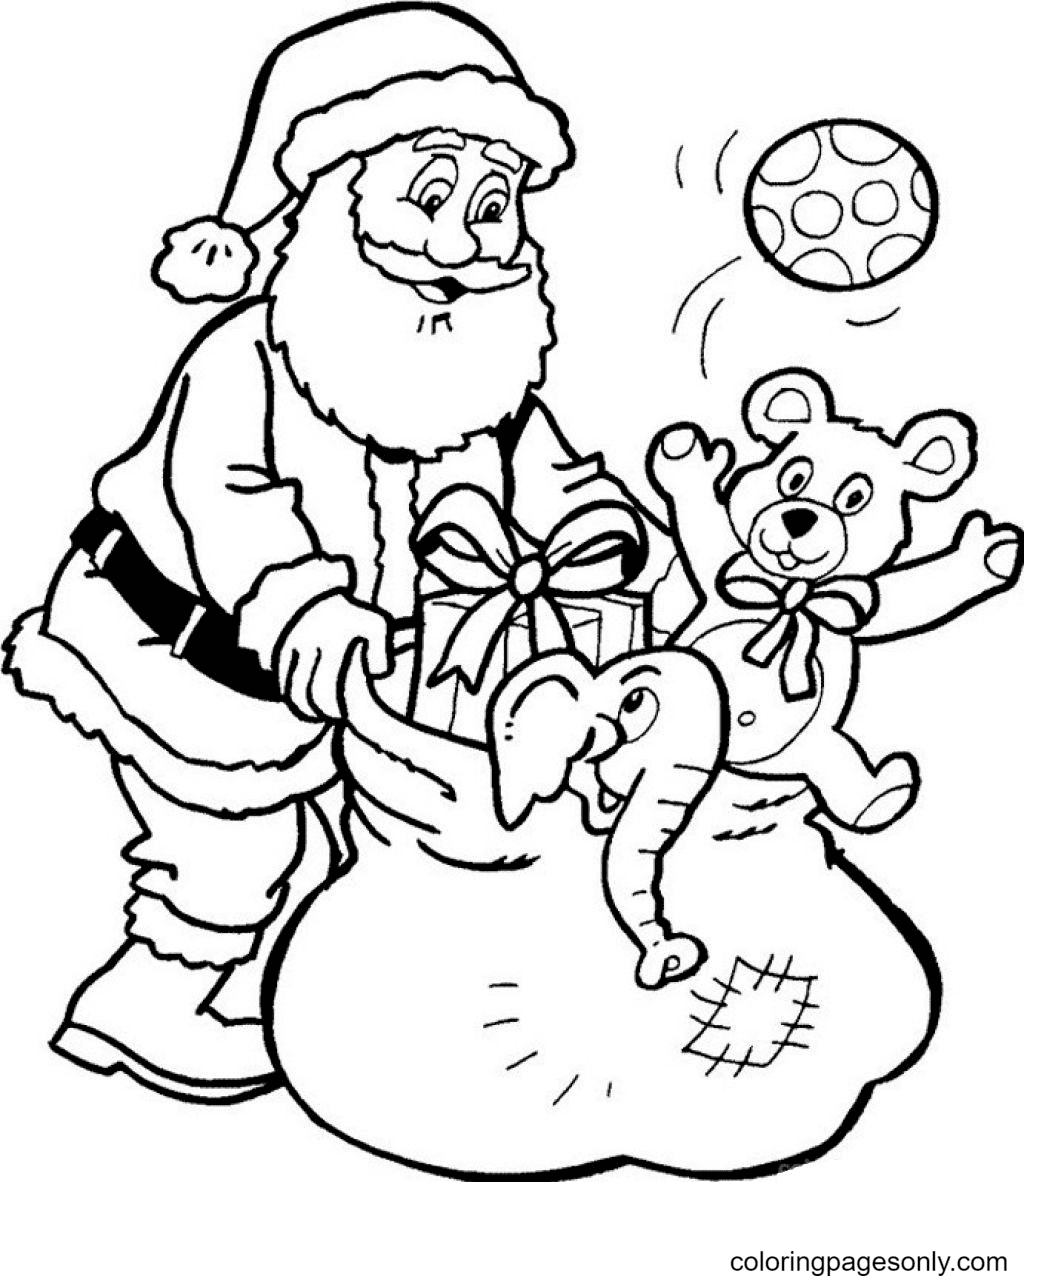 Дед Мороз забирает игрушки у Деда Мороза